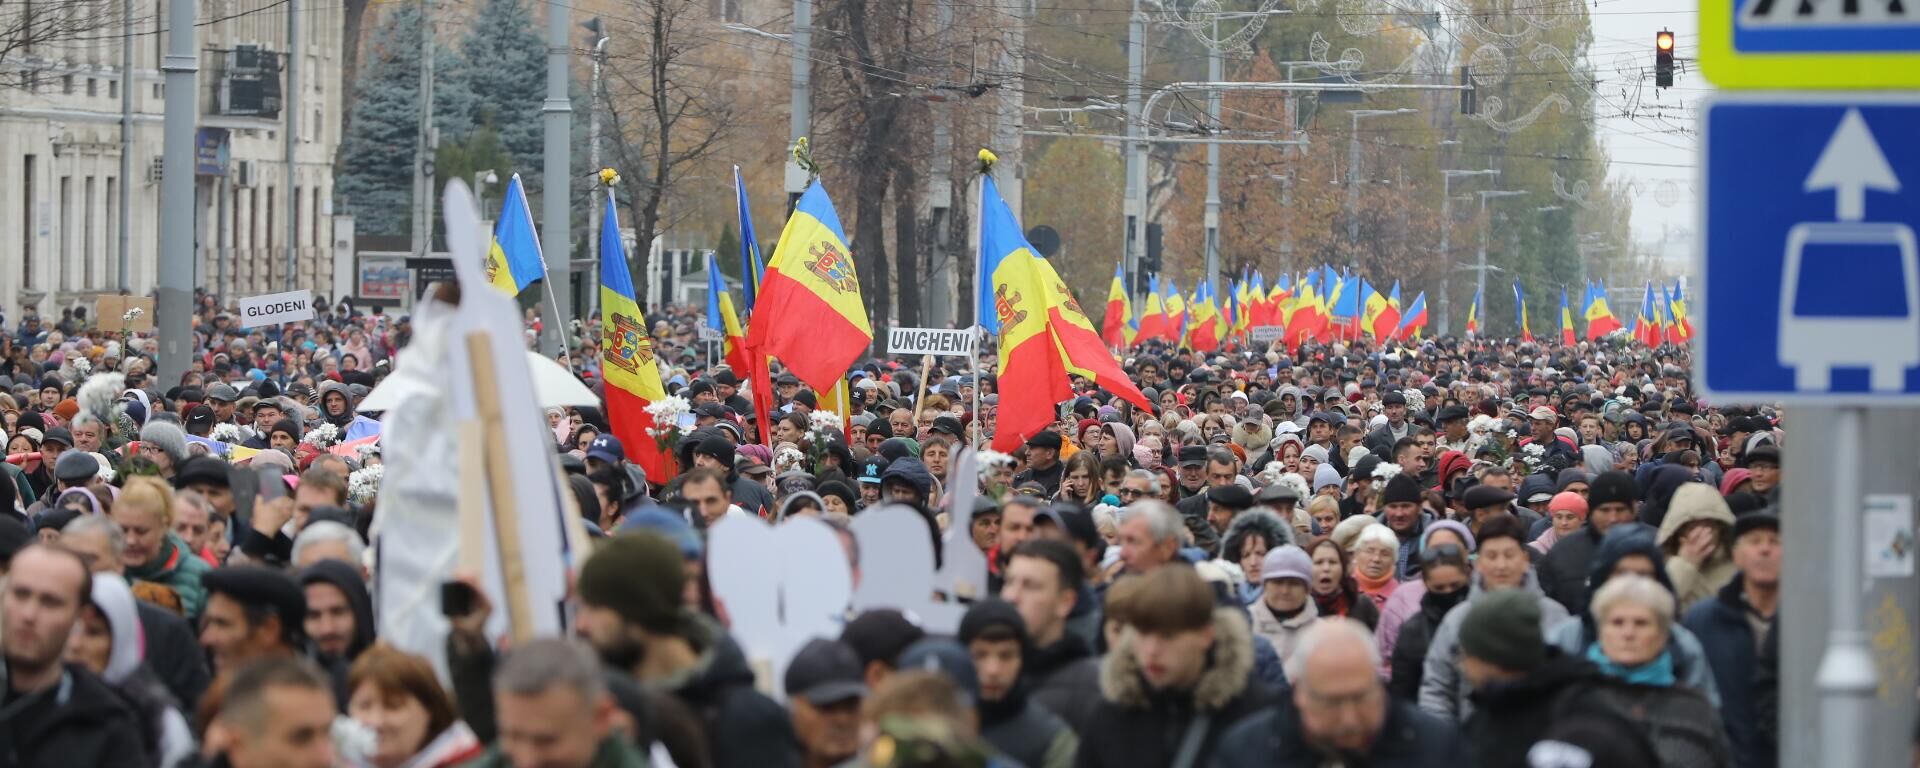 Președintele raionului Orhei, Dinu Țurcanu, care este unul dintre organizatorii protestelor, a spus că astăzi au manifestat în centrul Chișinăului între 40 și 60 de mii de oameni.  - Sputnik Moldova, 1920, 13.11.2022